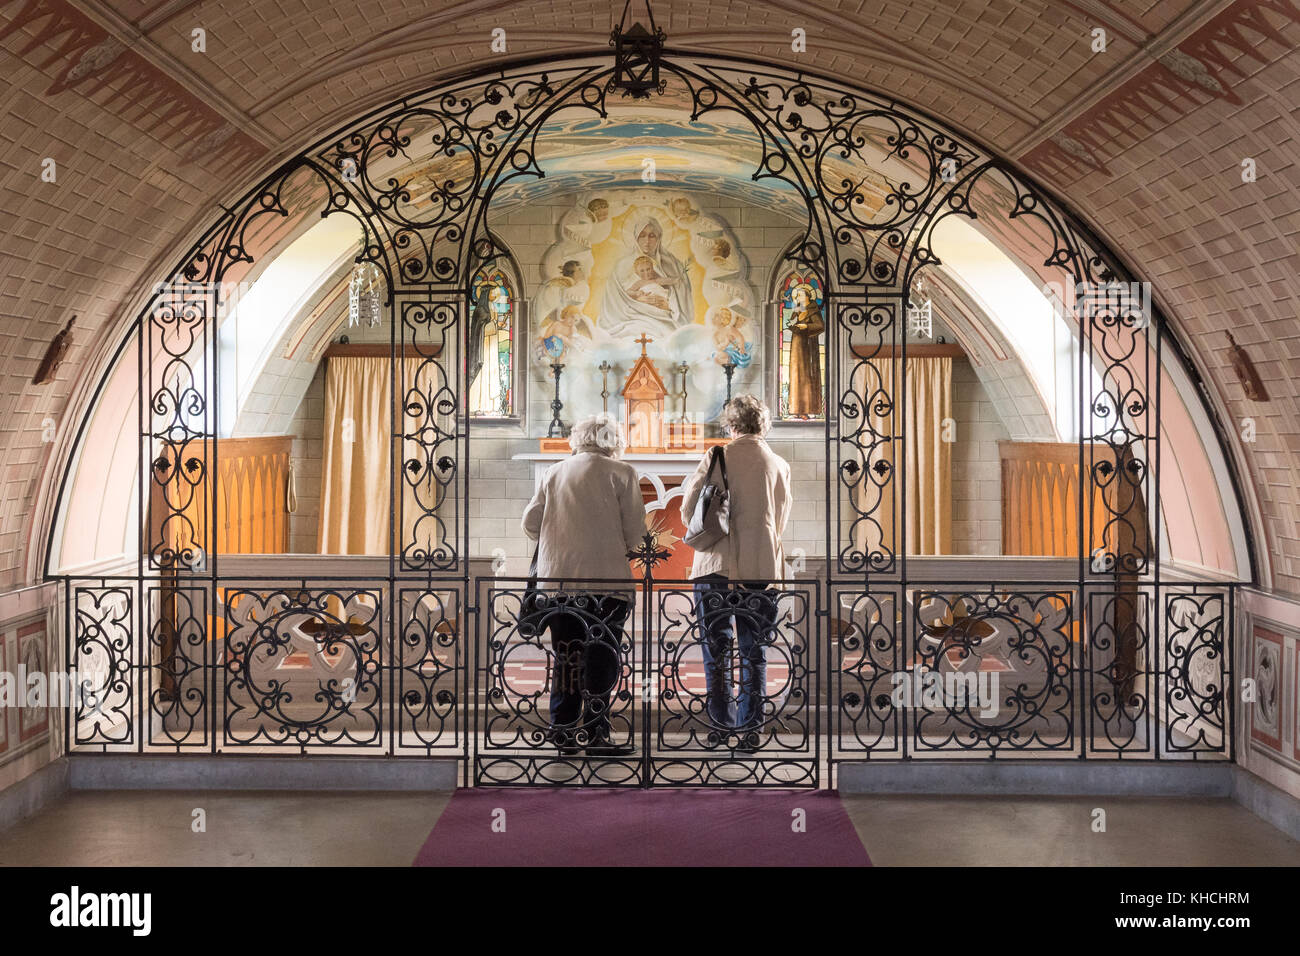 Cappella italiana, Orkney - due anziane signore all'interno della piccola cappella - Lamb Holm, Orkney Islands, Scotland, Regno Unito Foto Stock